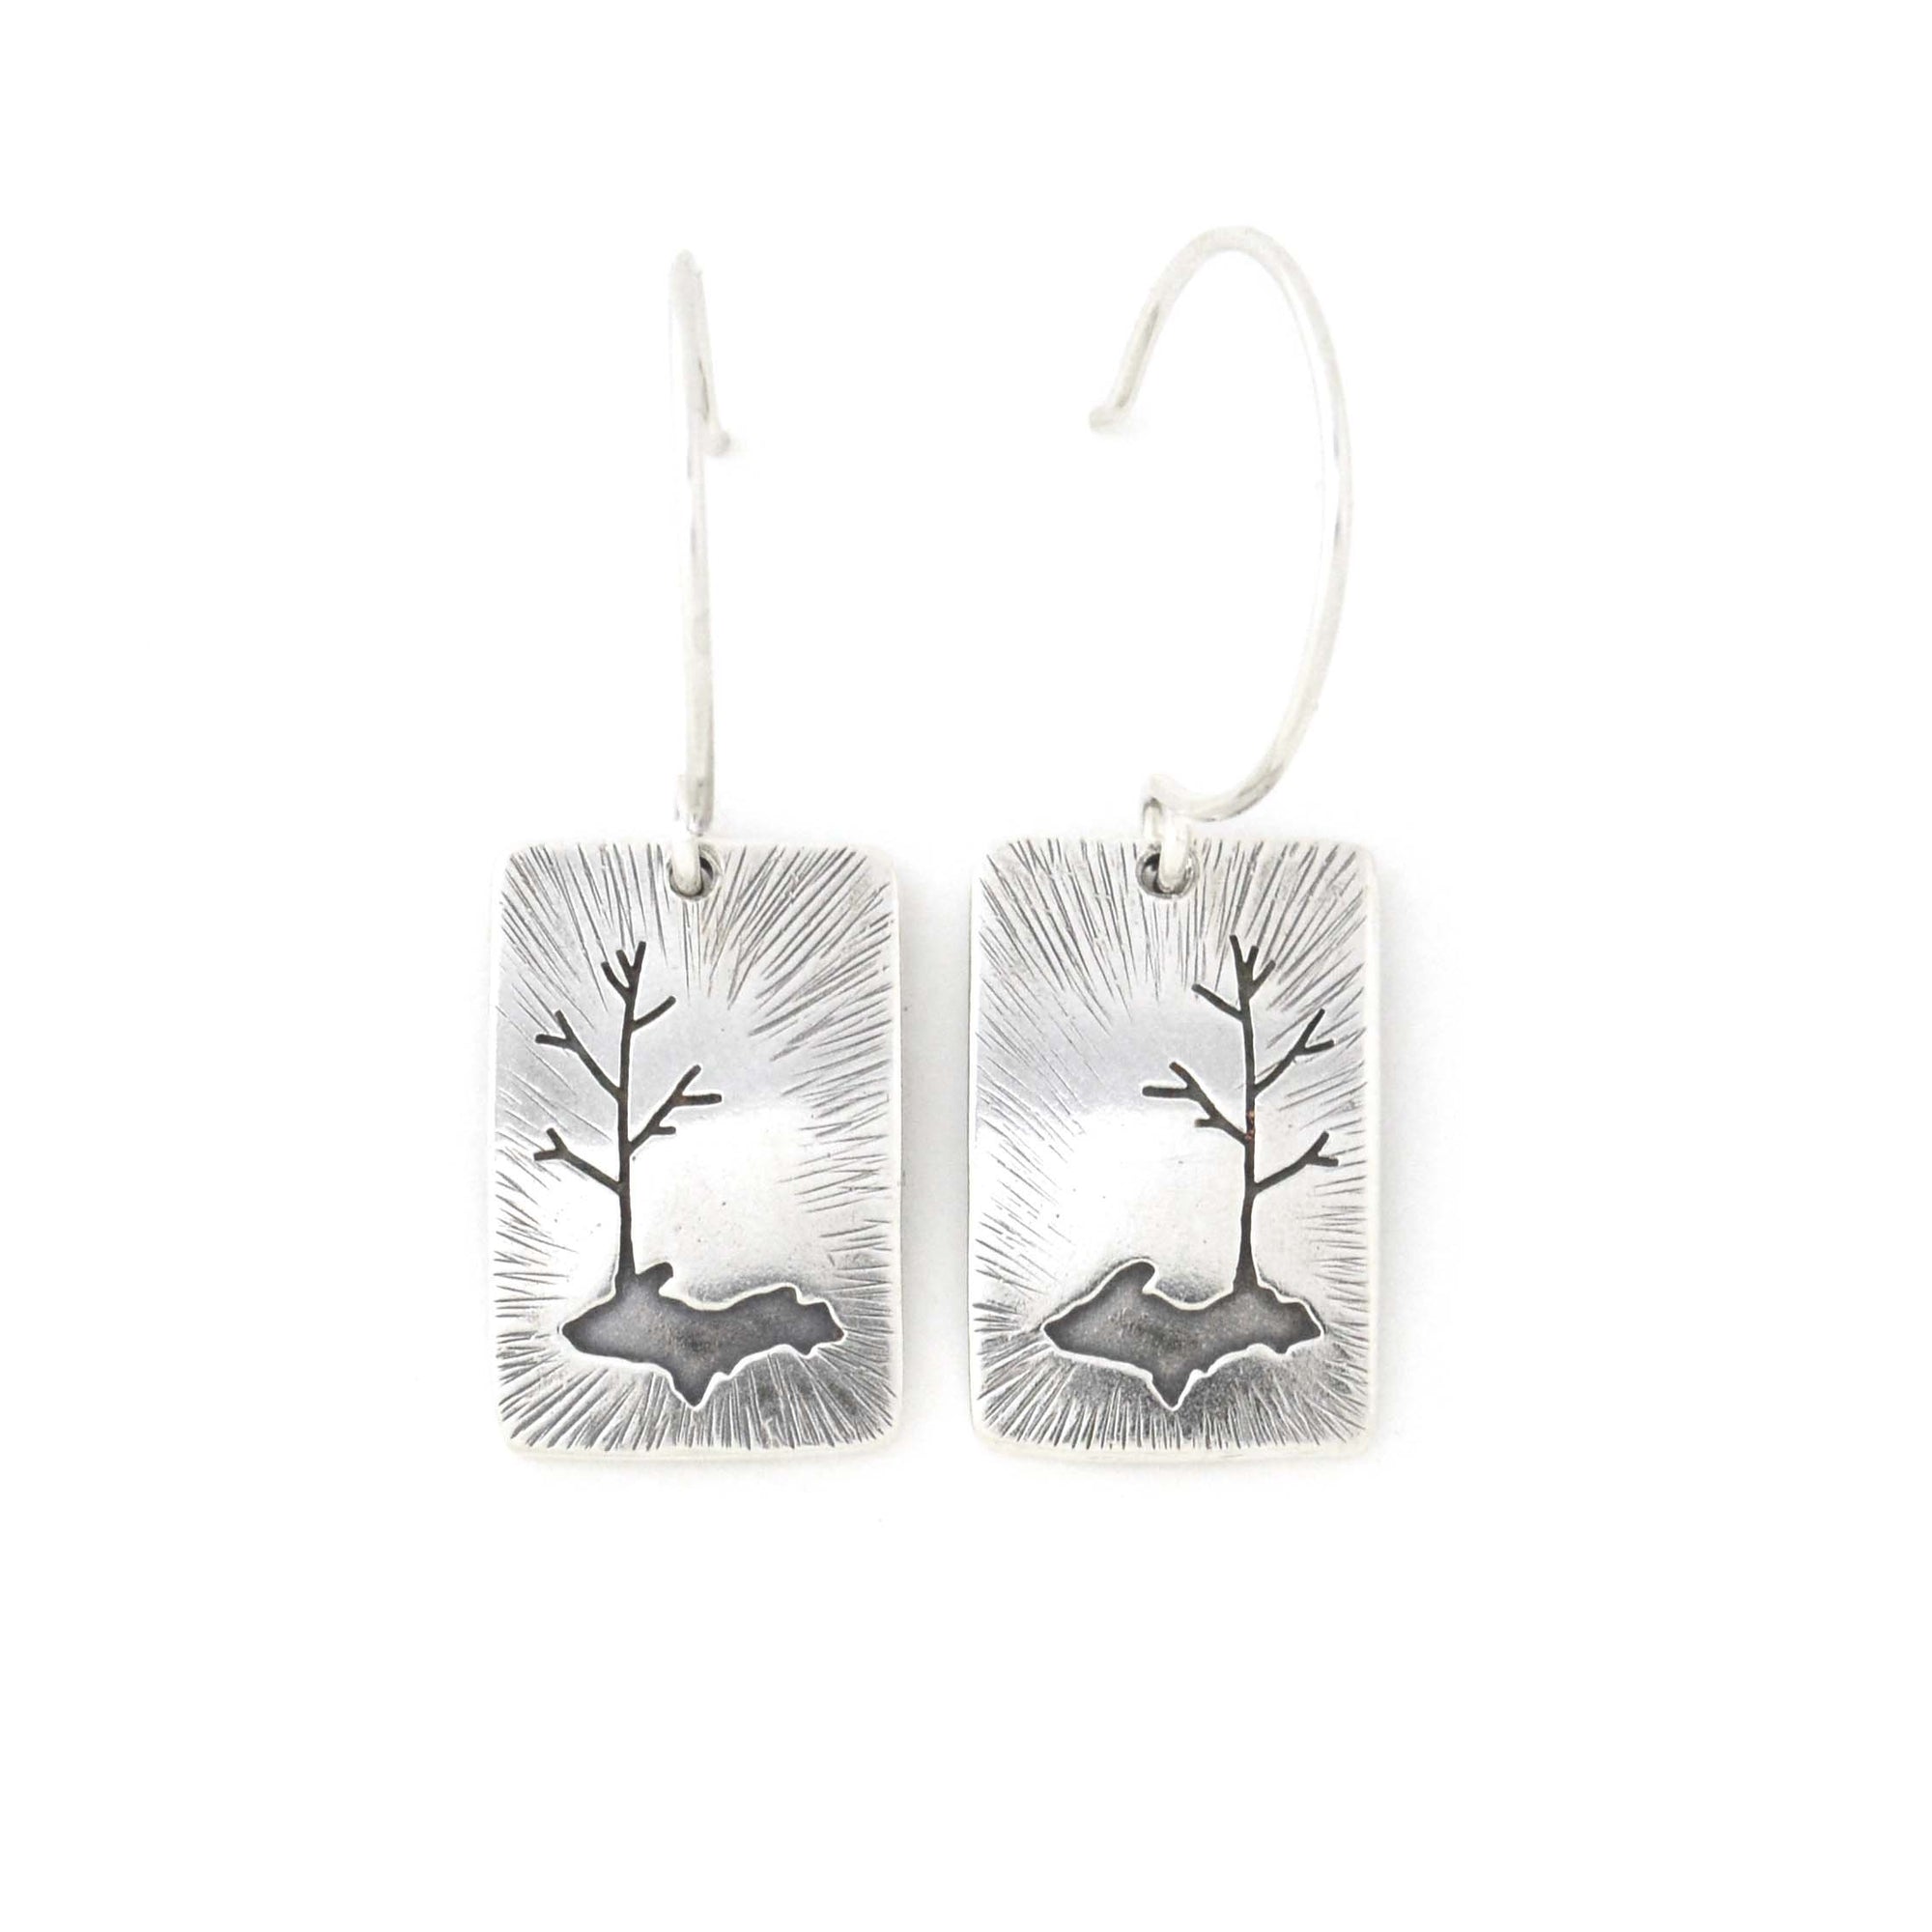 Radial Upper Peninsula Family Tree Silver Earrings - Silver Earrings   3855 - handmade by Beth Millner Jewelry